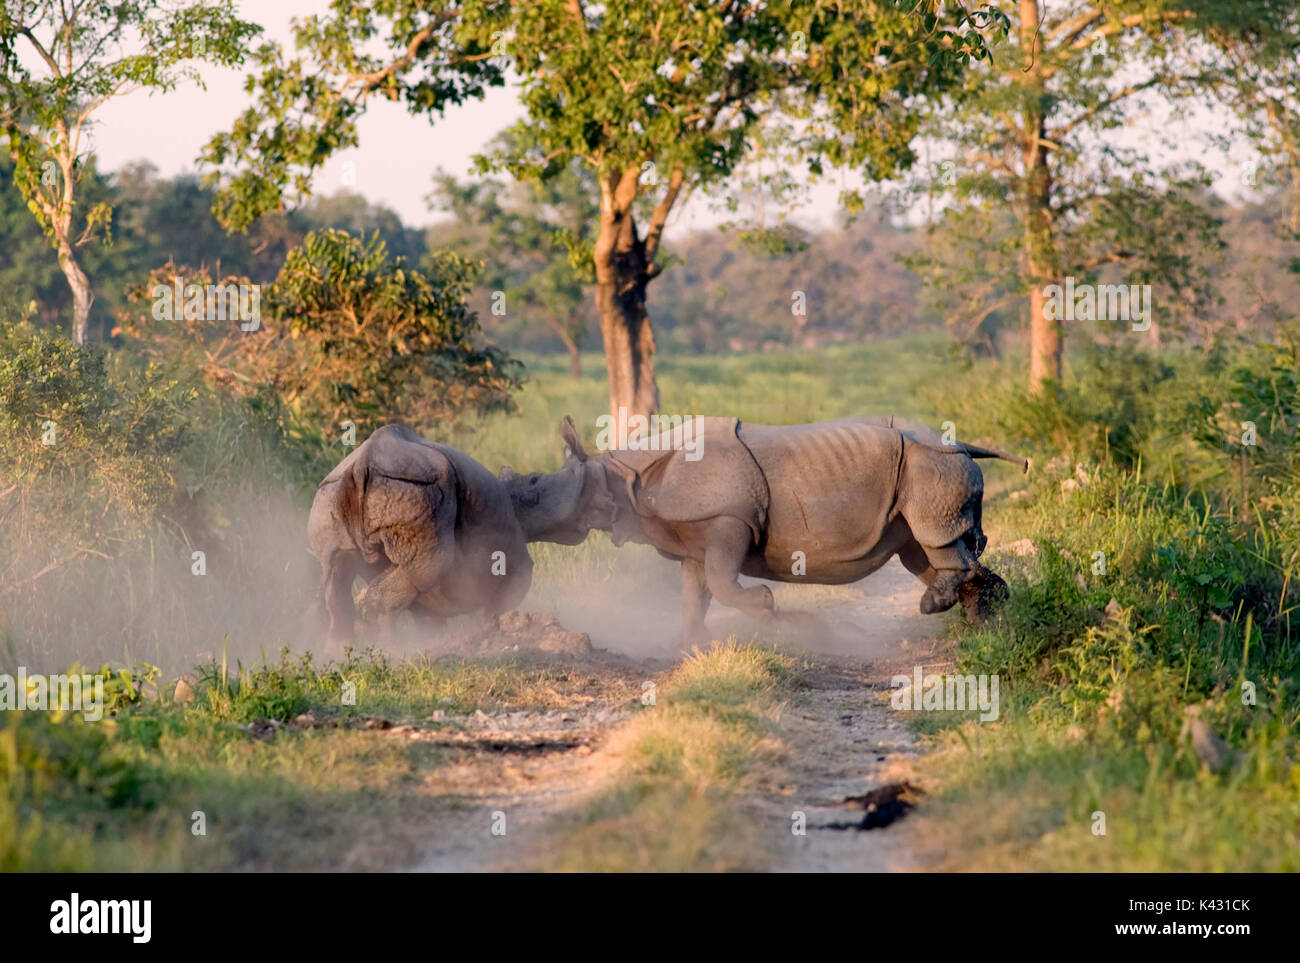 Rhinocéros indien, Rhinoceros unicornis, paire de mâles combats, parc national de Kaziranga, Assam, Inde, patrimoine mondial et l'UICN UICN Catégorie II Site, 2004 e Banque D'Images